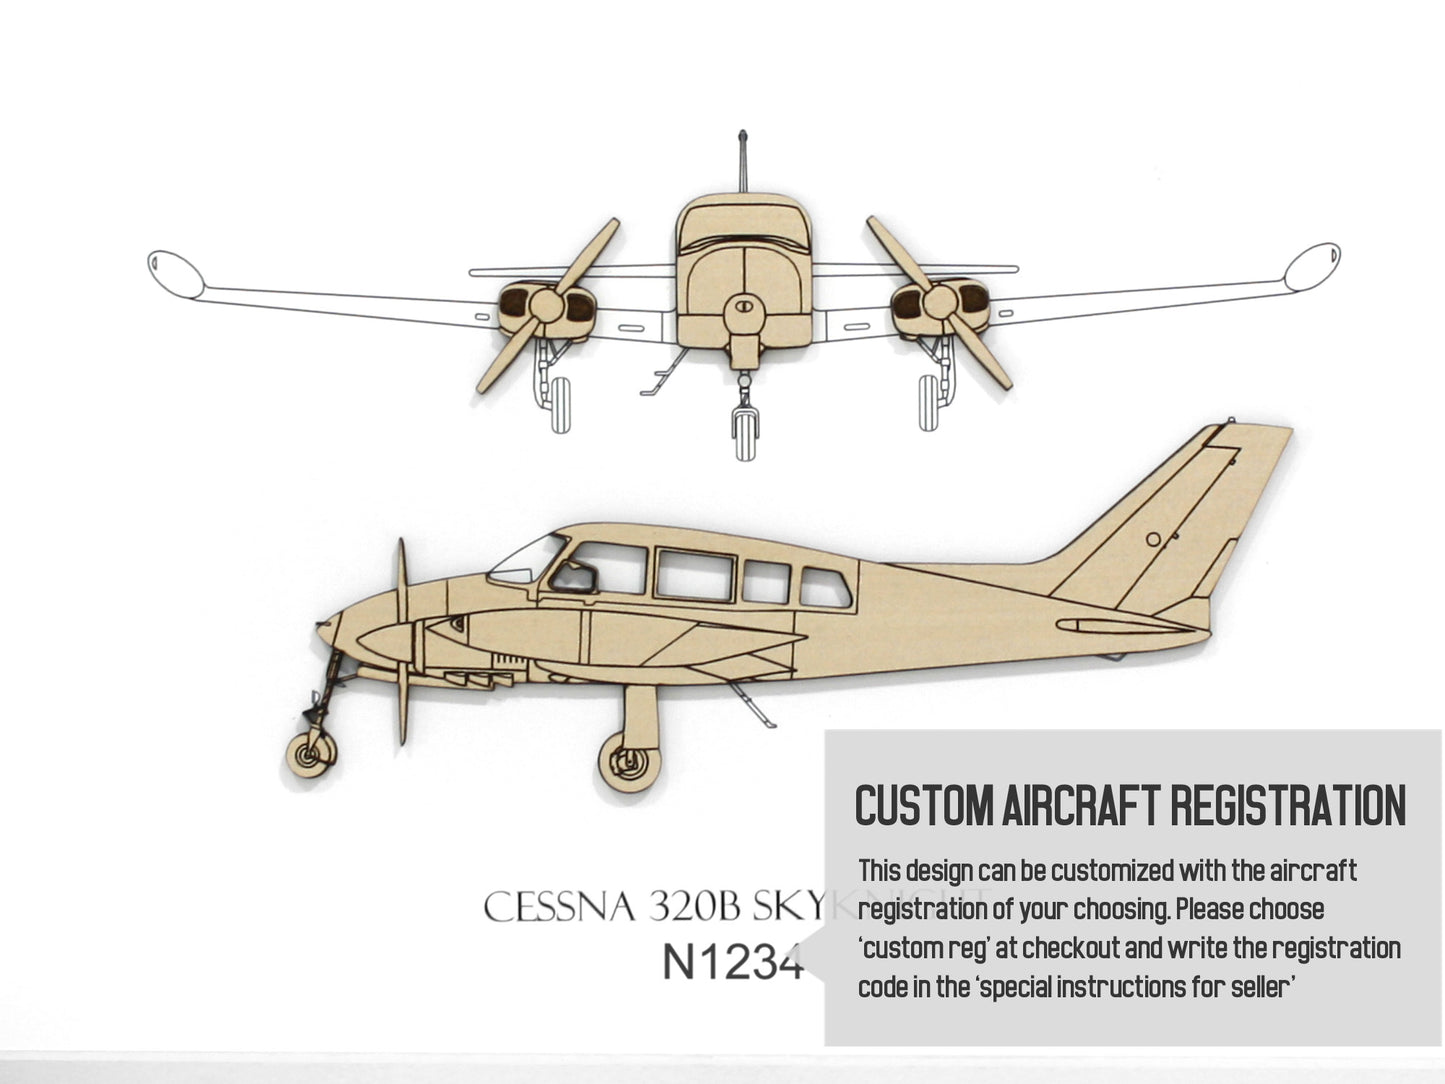 Cessna 320B Skyknight custom aviation gifts